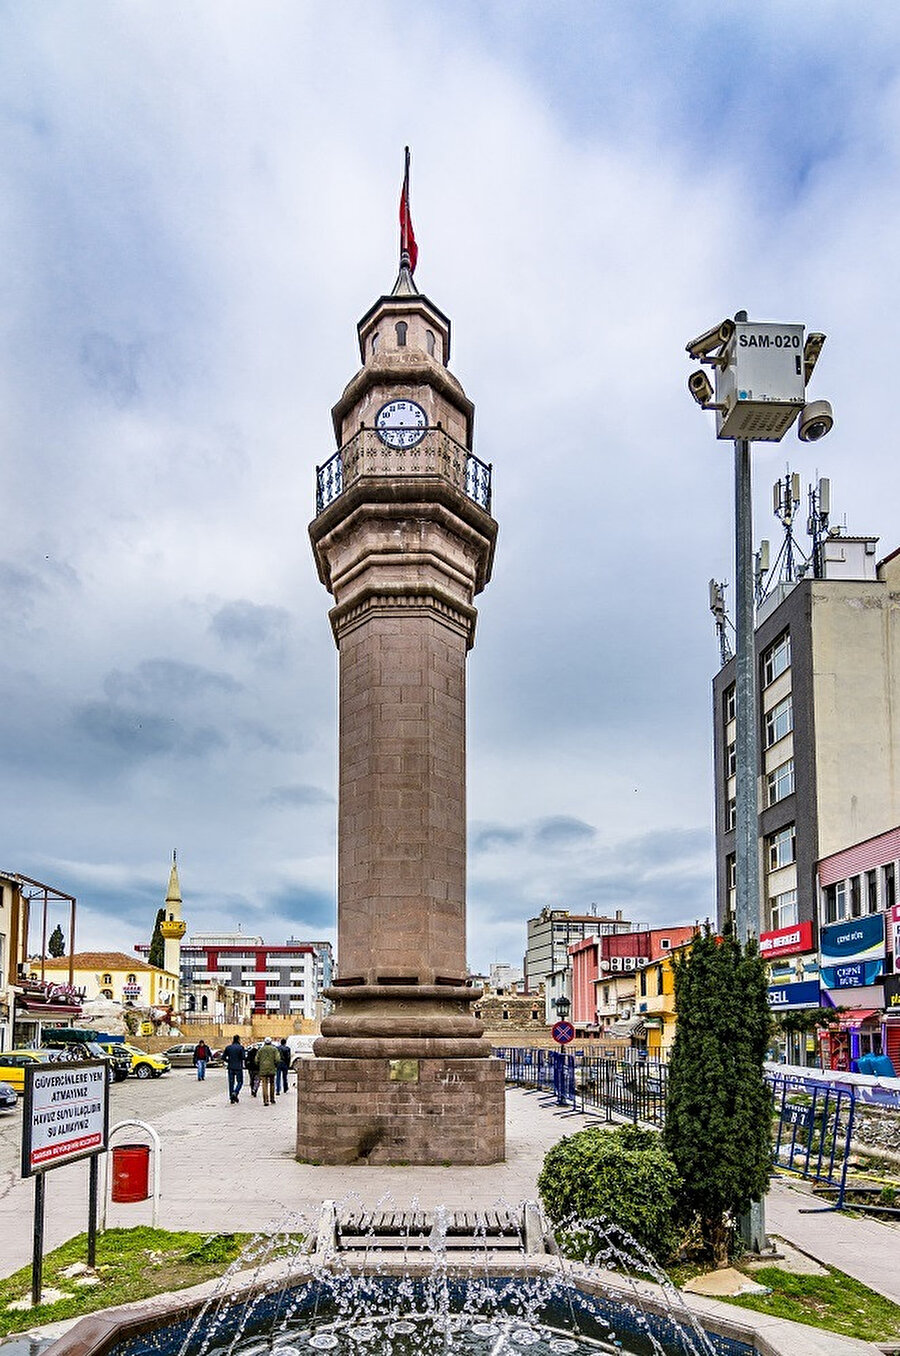 Samsun Saat Kulesi, Samsun'un İlkadım ilçesinde bulunan Saathane Meydanı'na adını veren kule.